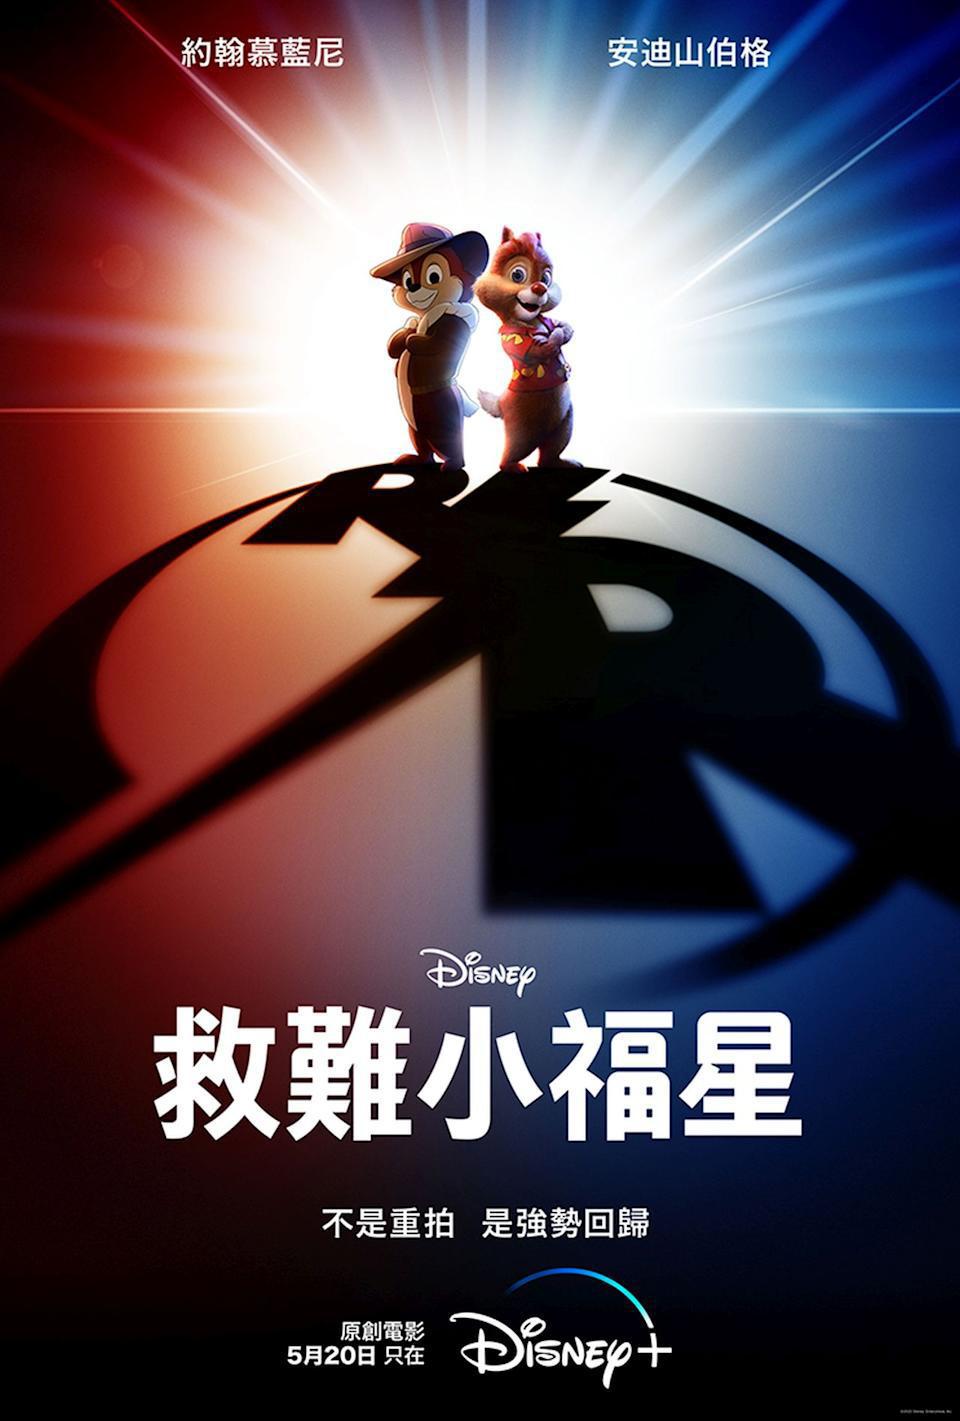 知名花栗鼠搭檔「奇奇、蒂蒂」主演電影「救難小福星」即將獨家登上Disney+平台...